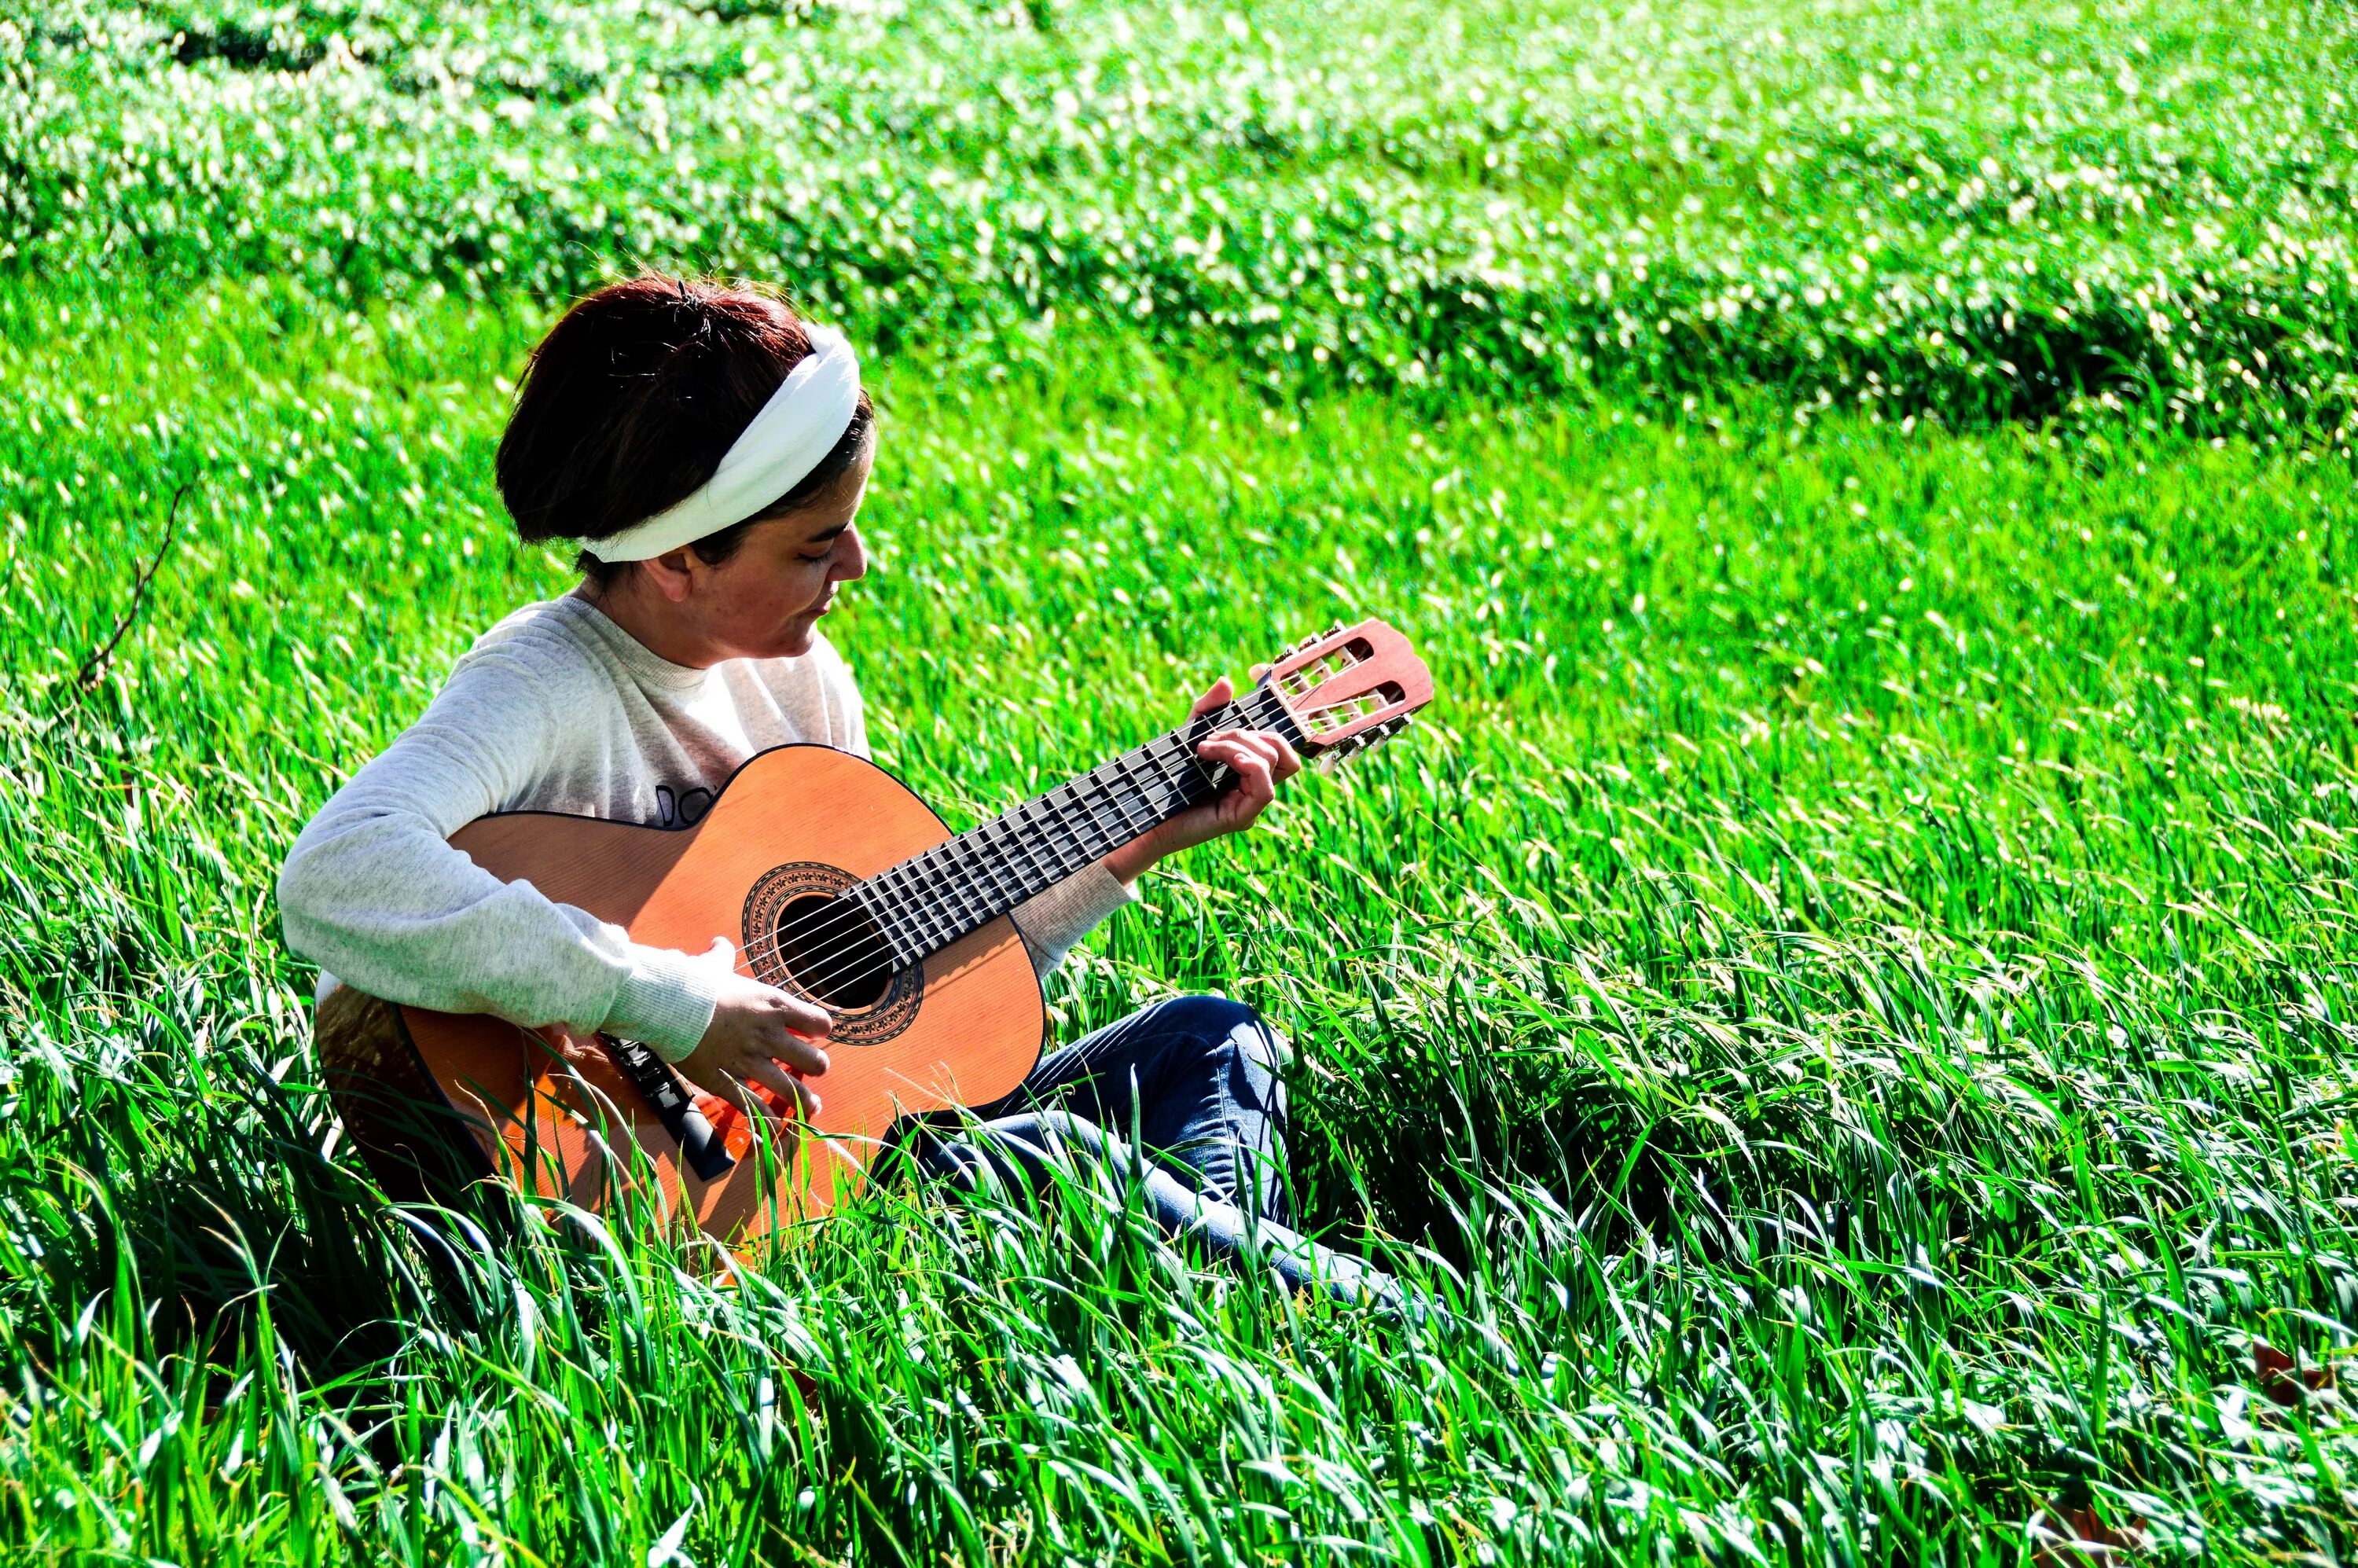 Поля саундтреки. Фотосессия с гитарой на природе. Девочка с гитарой. Девушка с гитарой на траве. Гитара на природе.